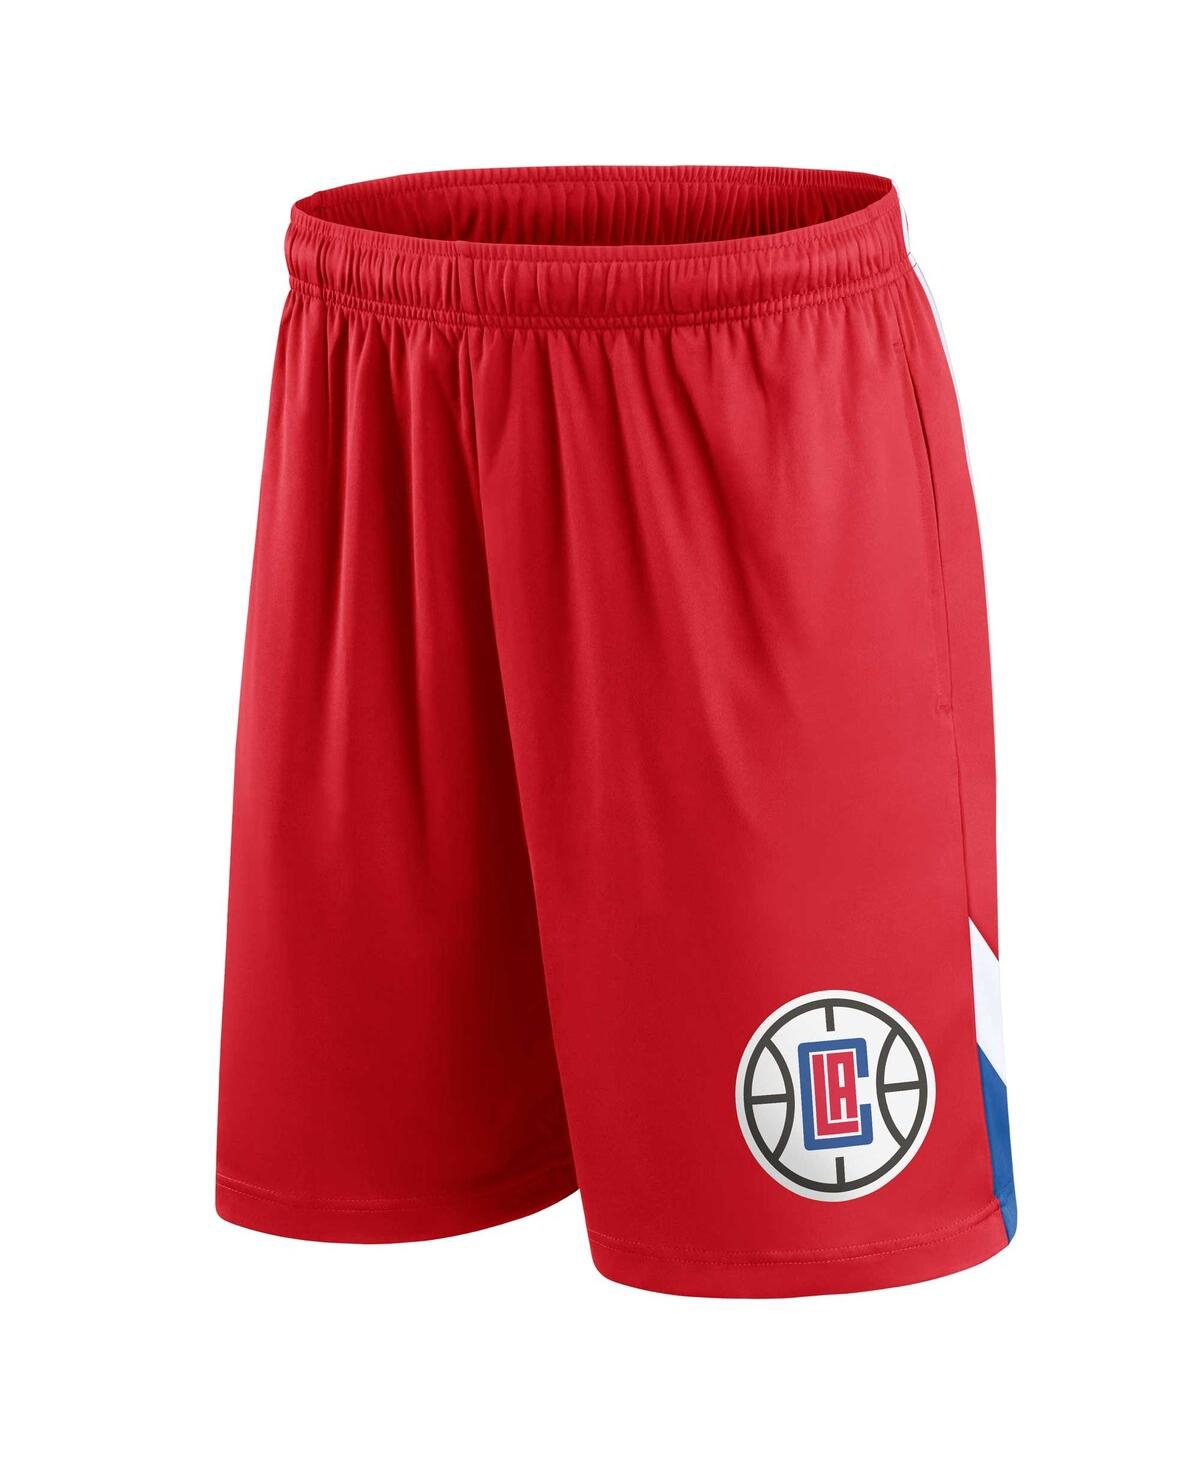 Shop Fanatics Men's  Red La Clippers Slice Shorts